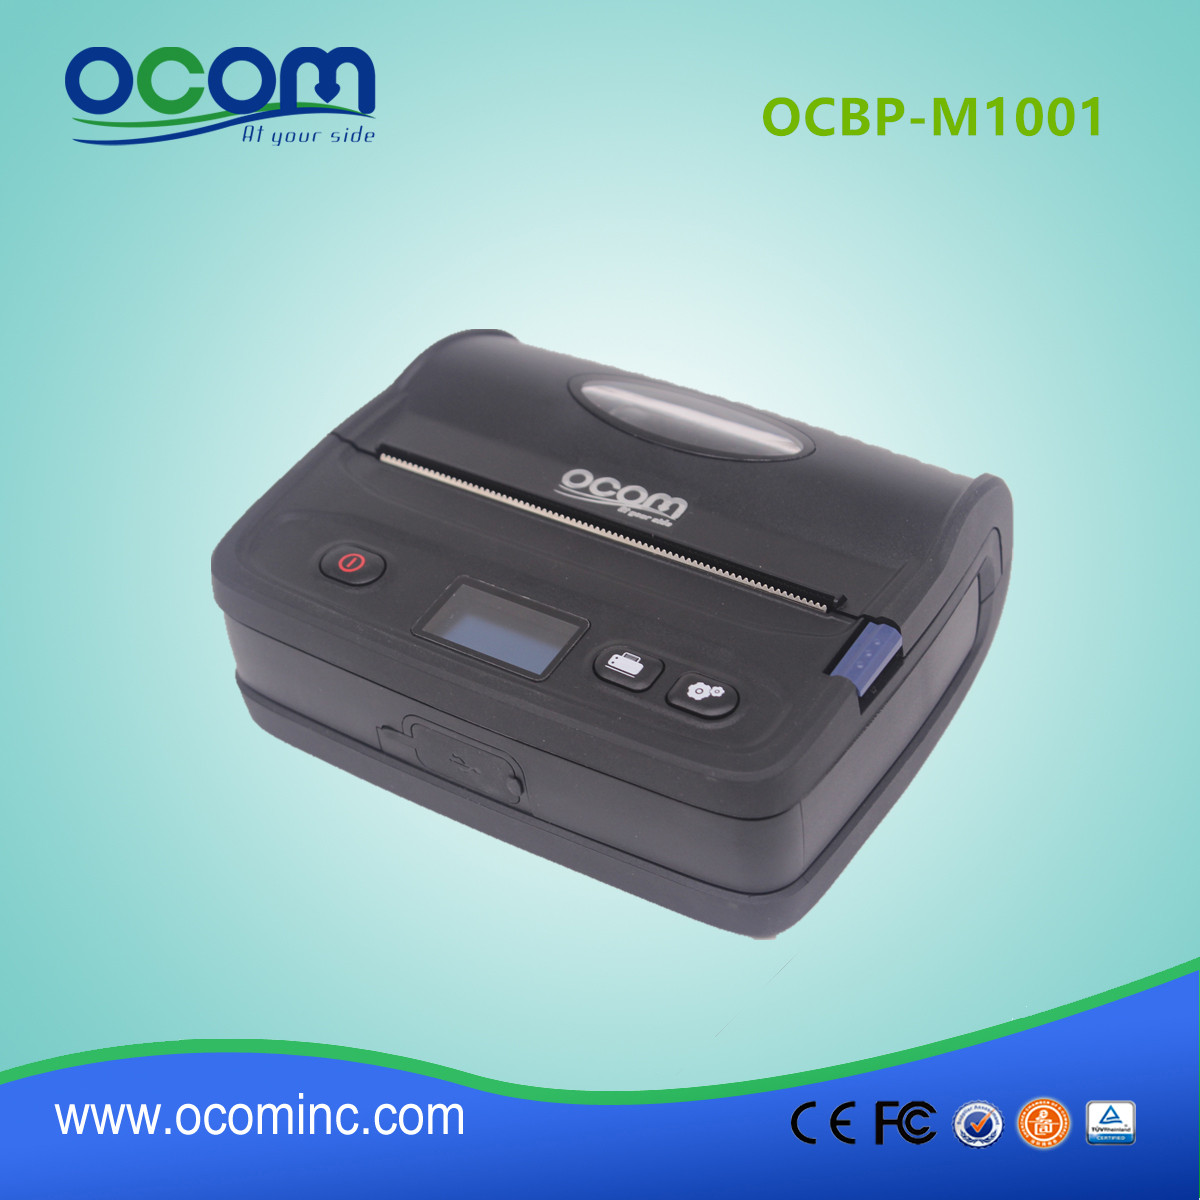 OCBP-M1001 adhésif thermique Etiquette code-barres pour autocollants